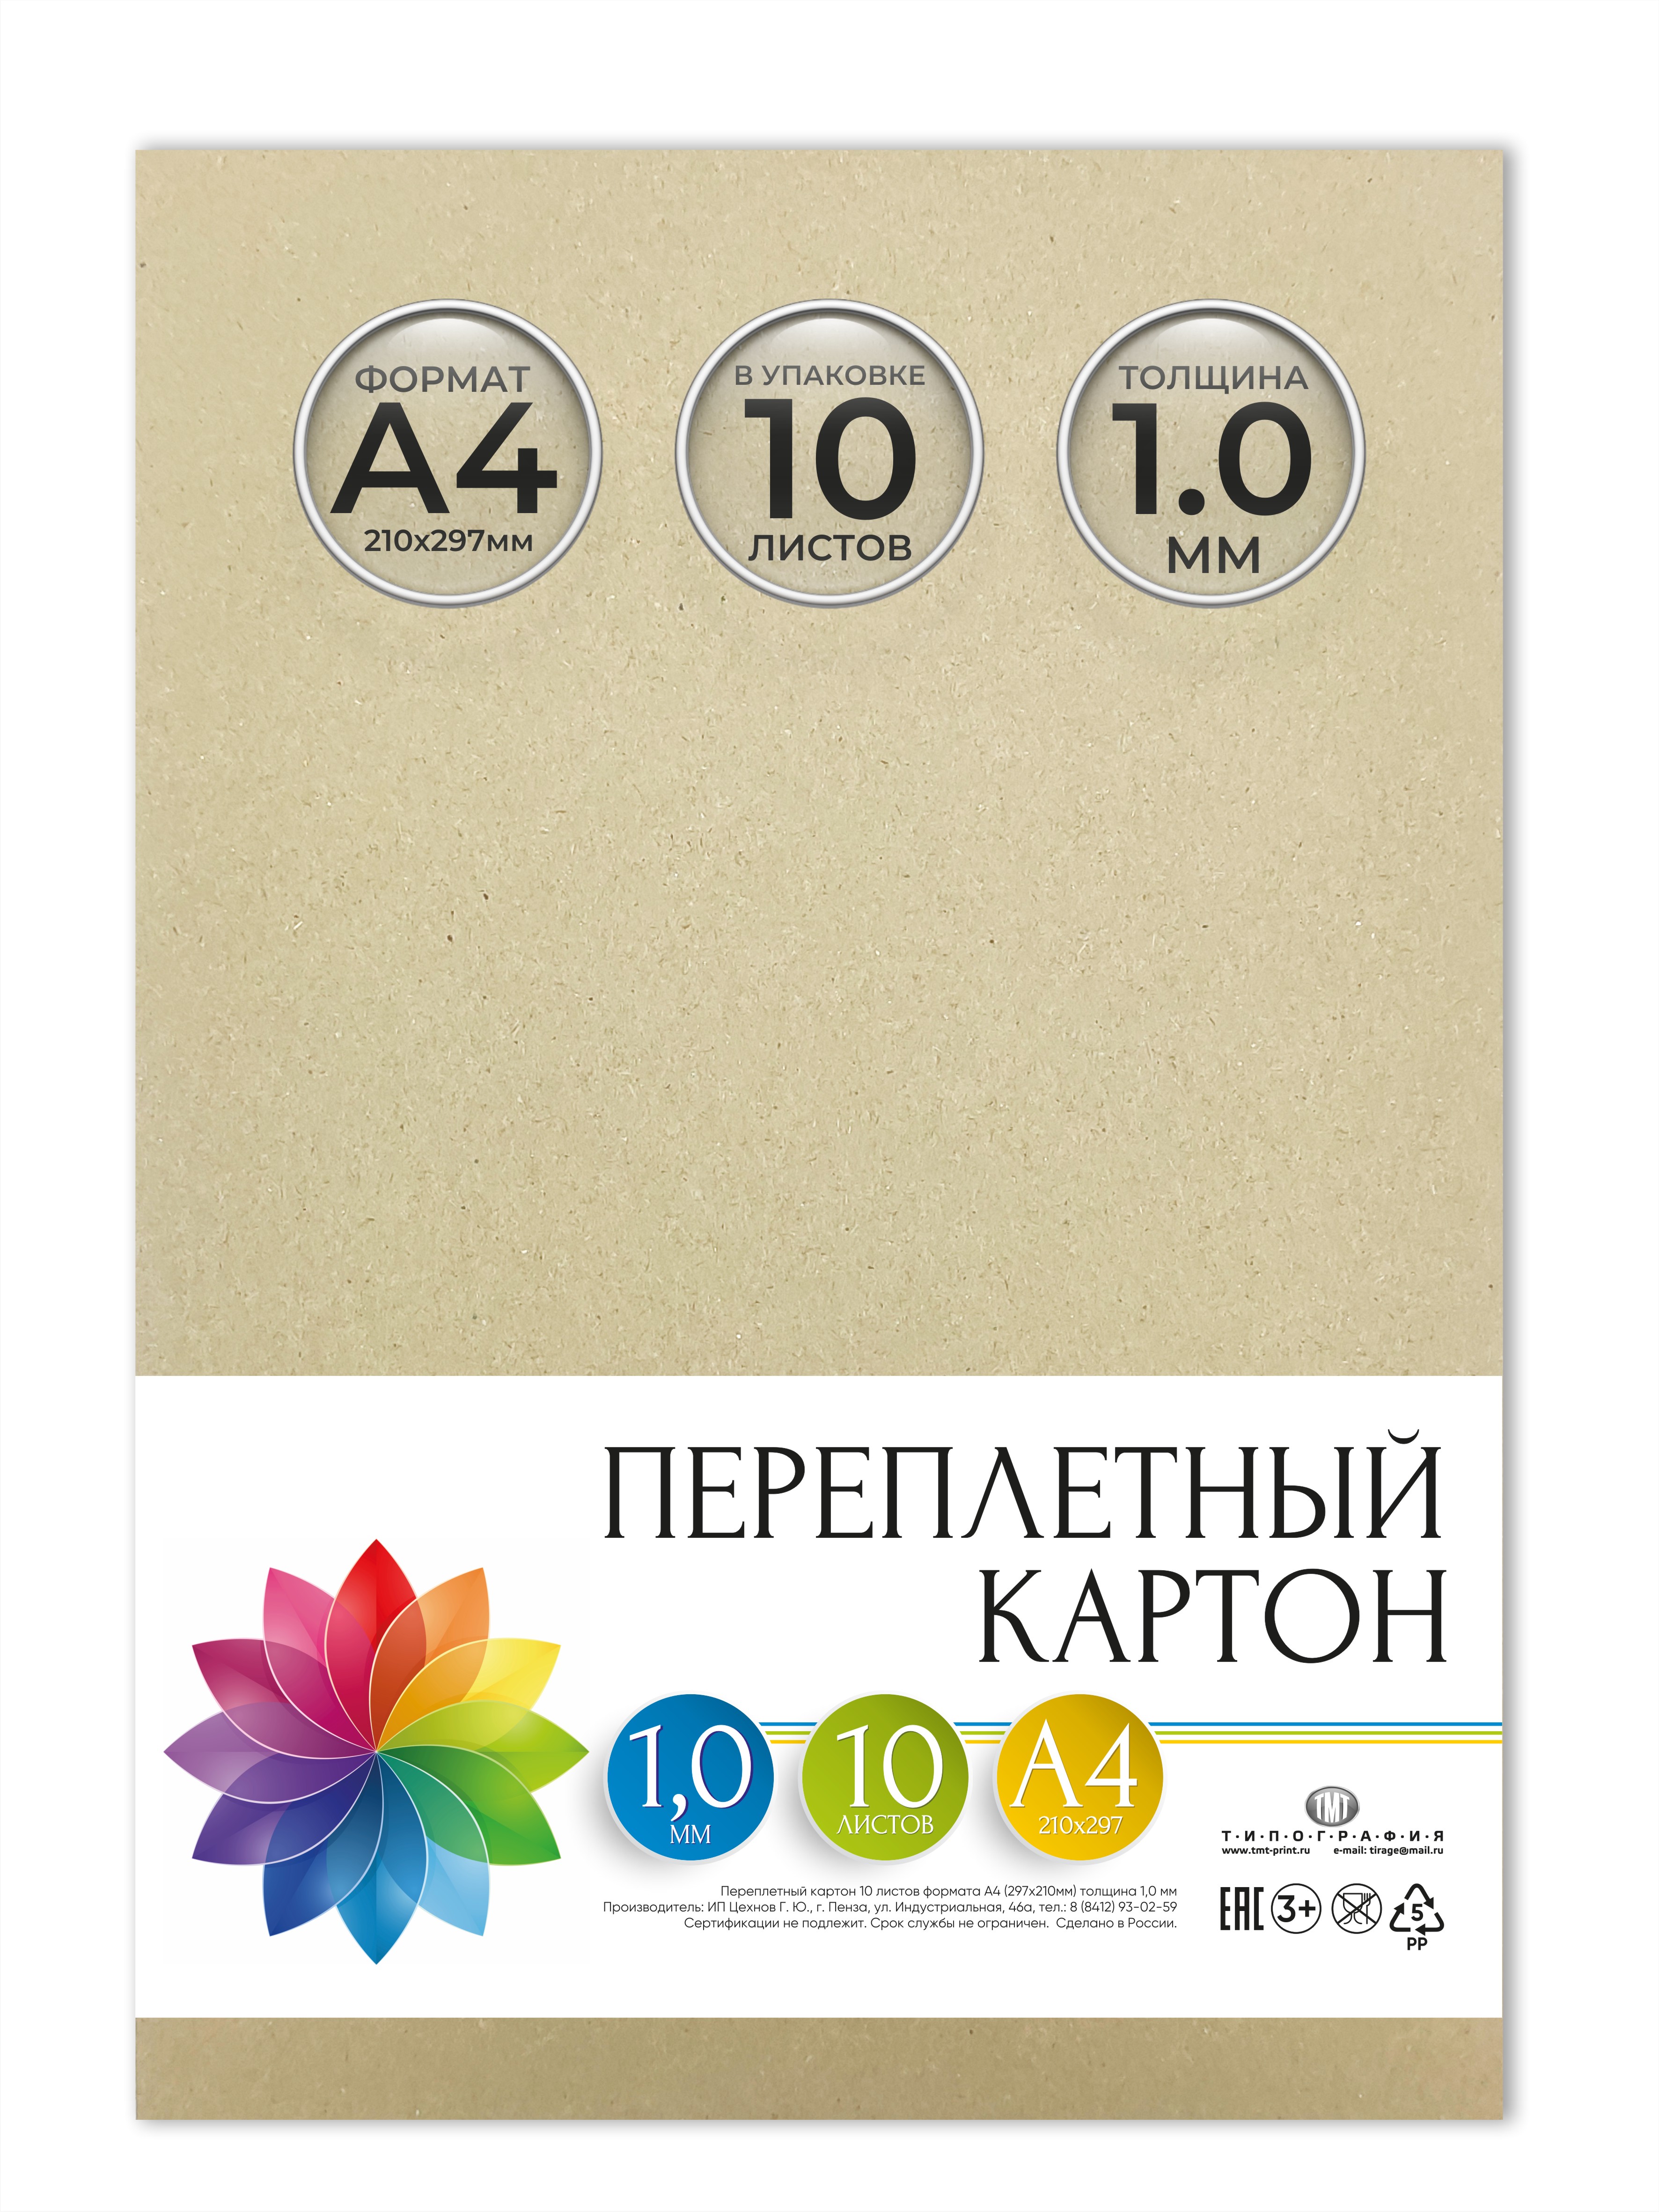 Картон переплетный Типография ТМТ, 10 листов, формат А4, толщина 1 мм